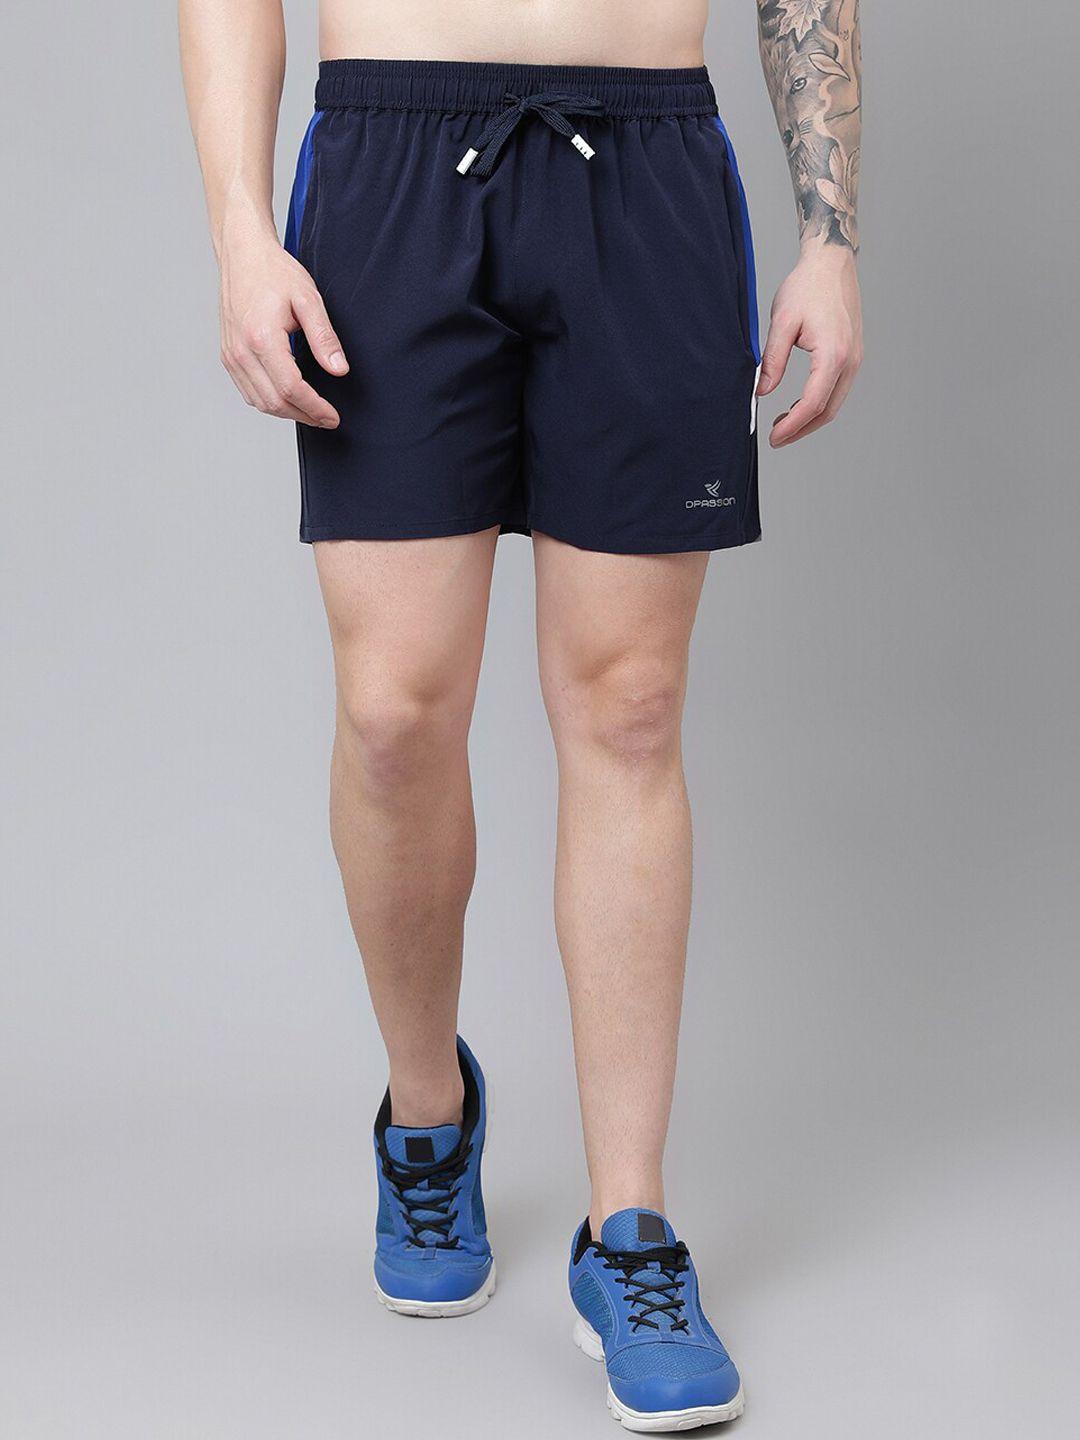 dpassion men solid running sports shorts